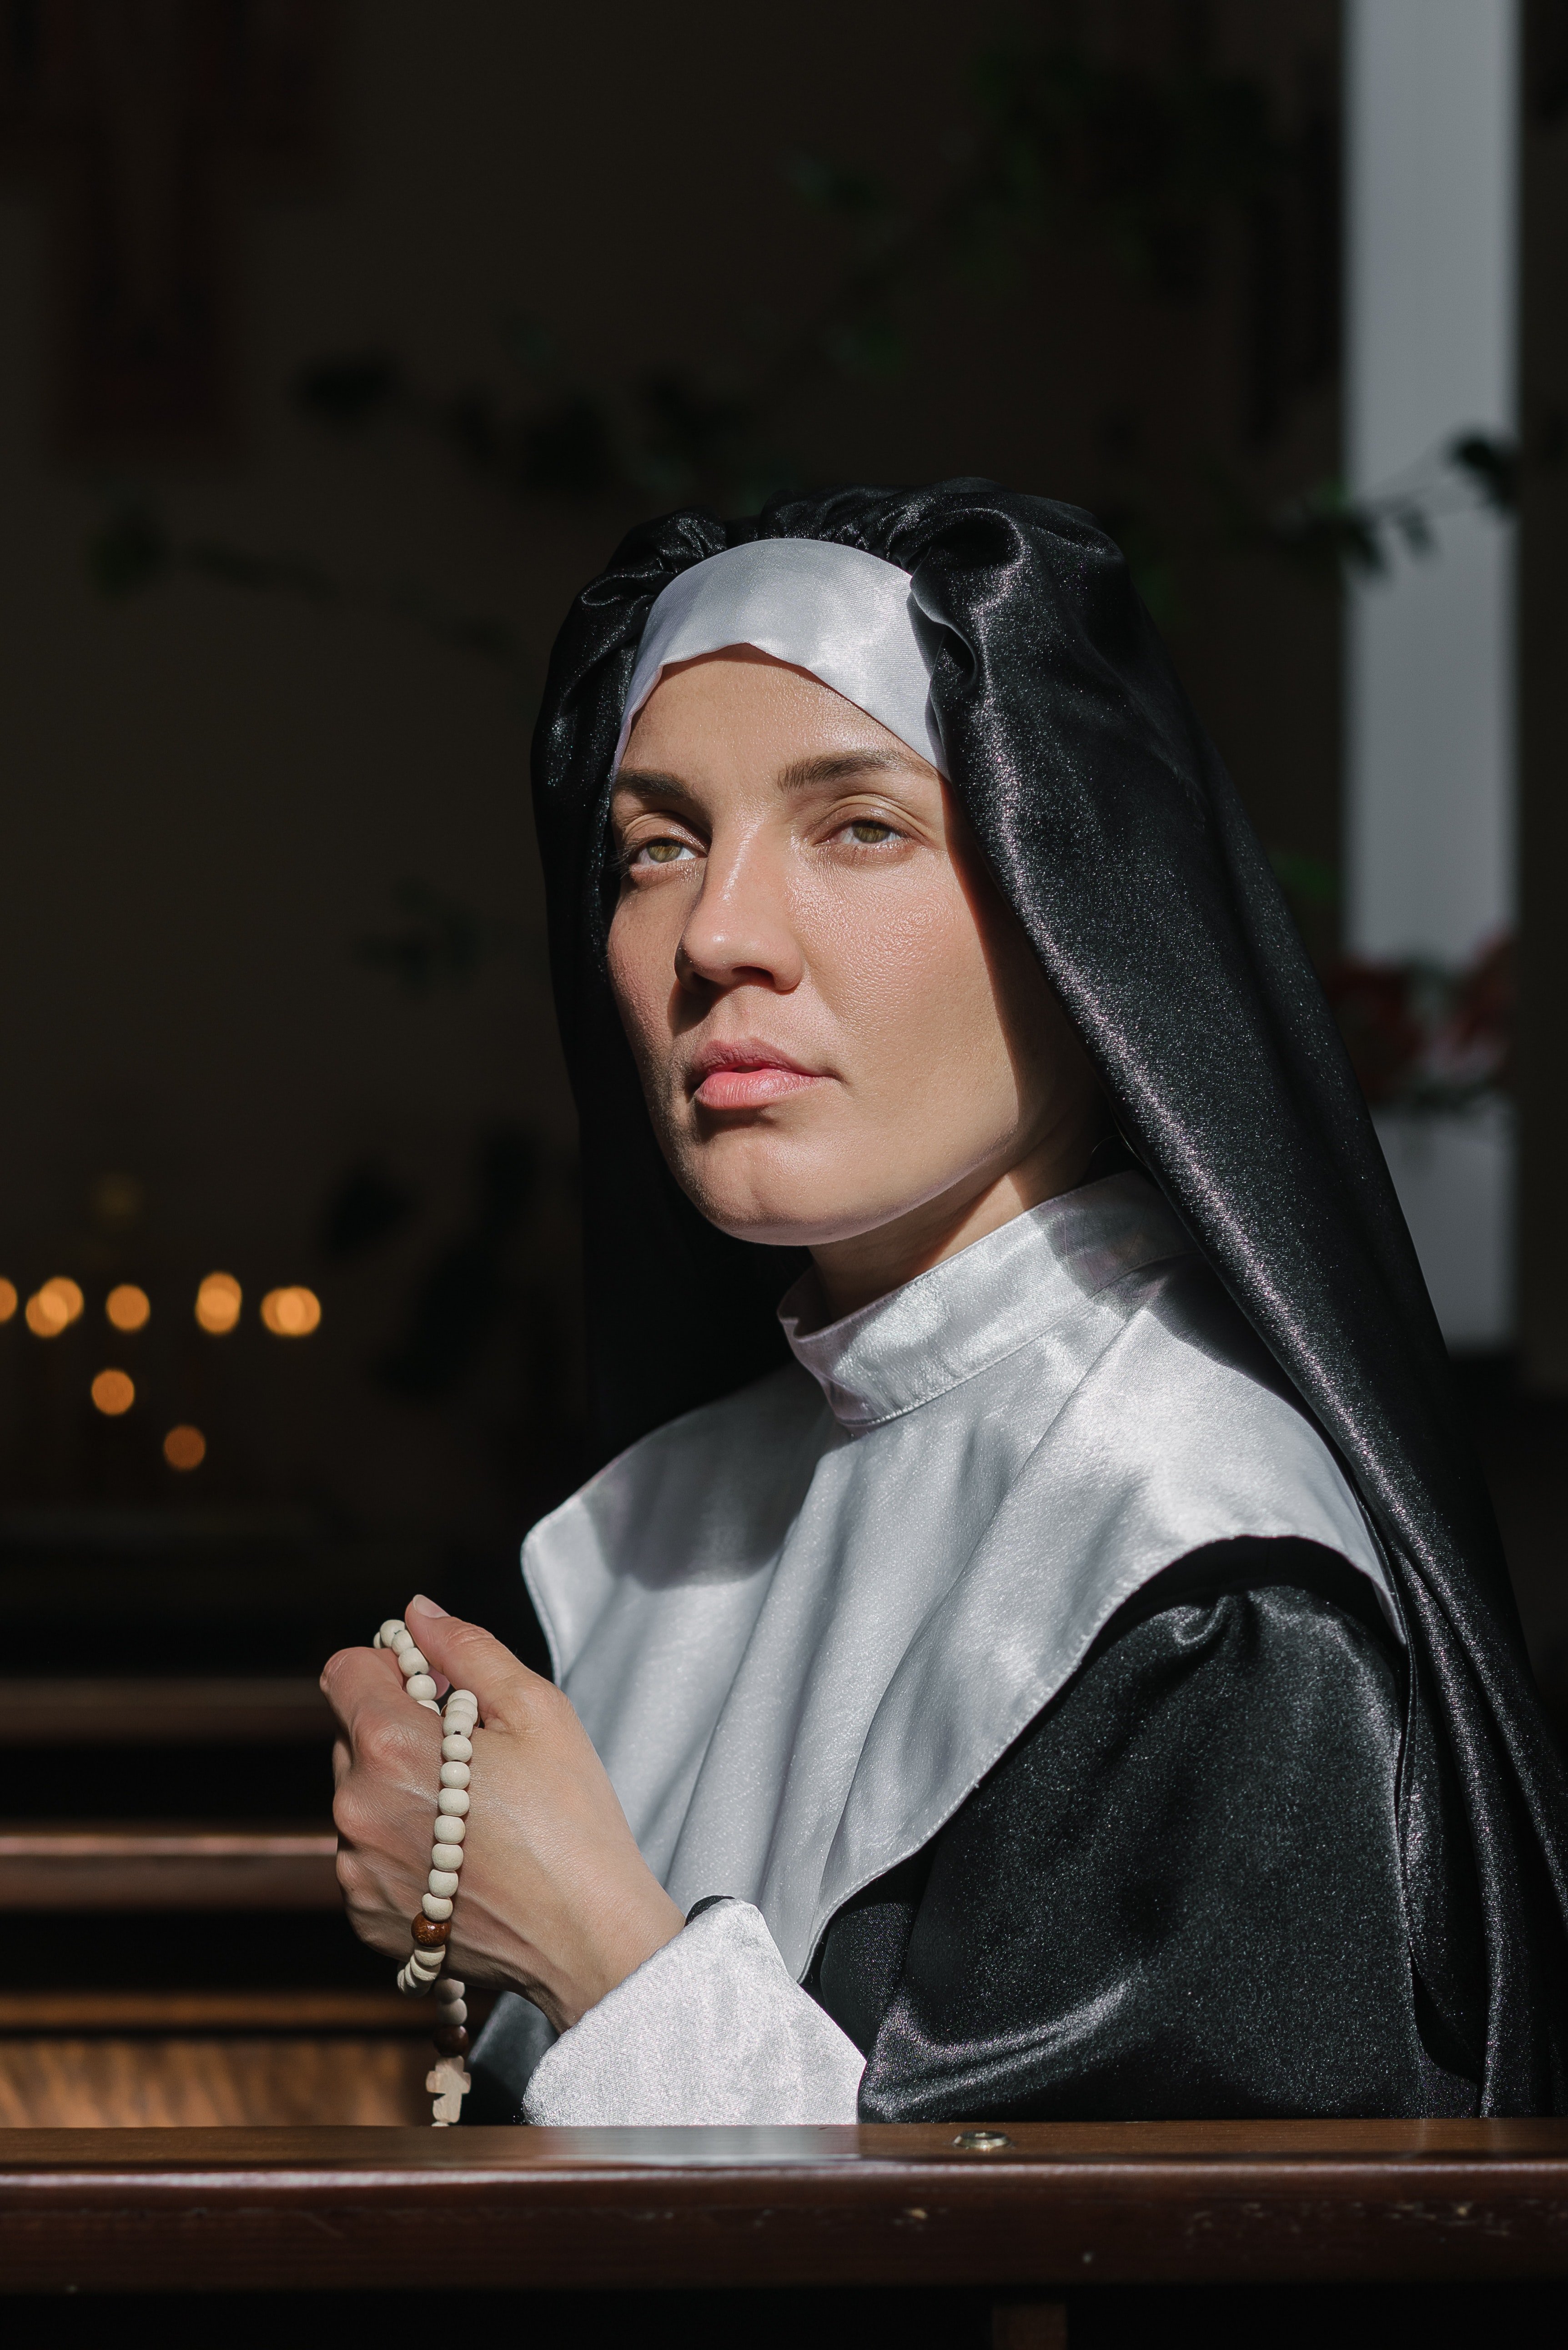 Schwester Martha enthüllte Paiges herzzerreißende Geschichte. | Quelle: Pexels